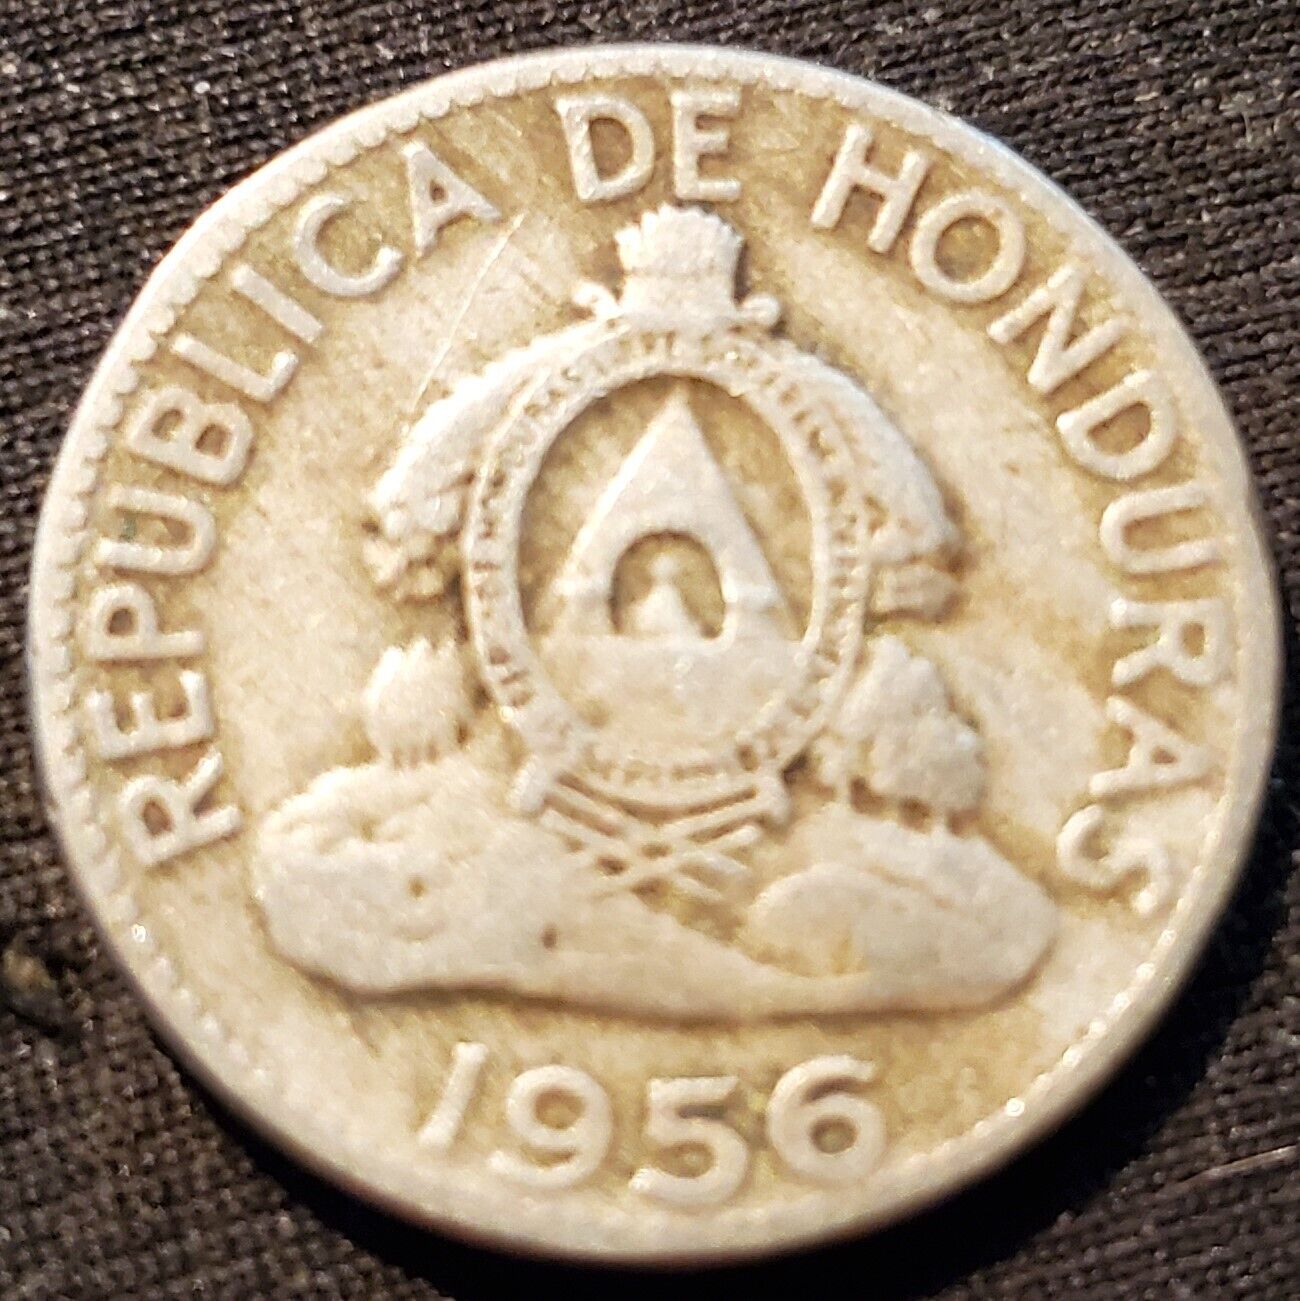 Republica De Honduras 5 Centavos 1956 Coin (2)